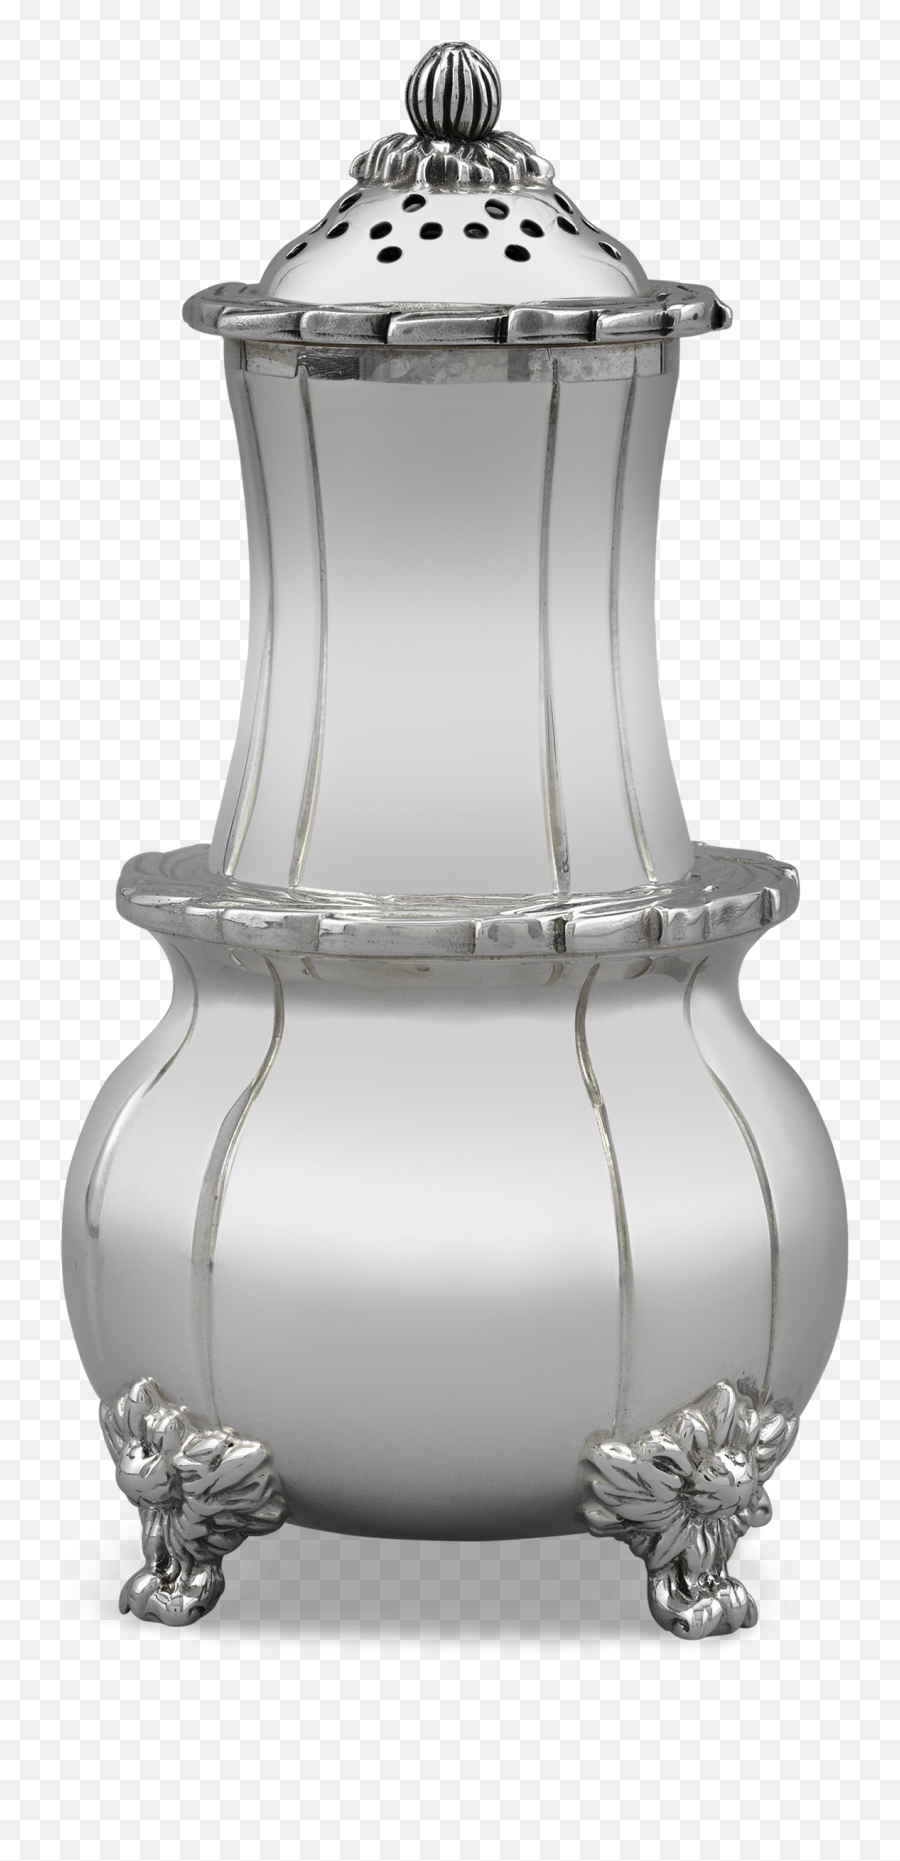 Sterling Silver Salt Shaker - Serveware Png,Salt Shaker Png